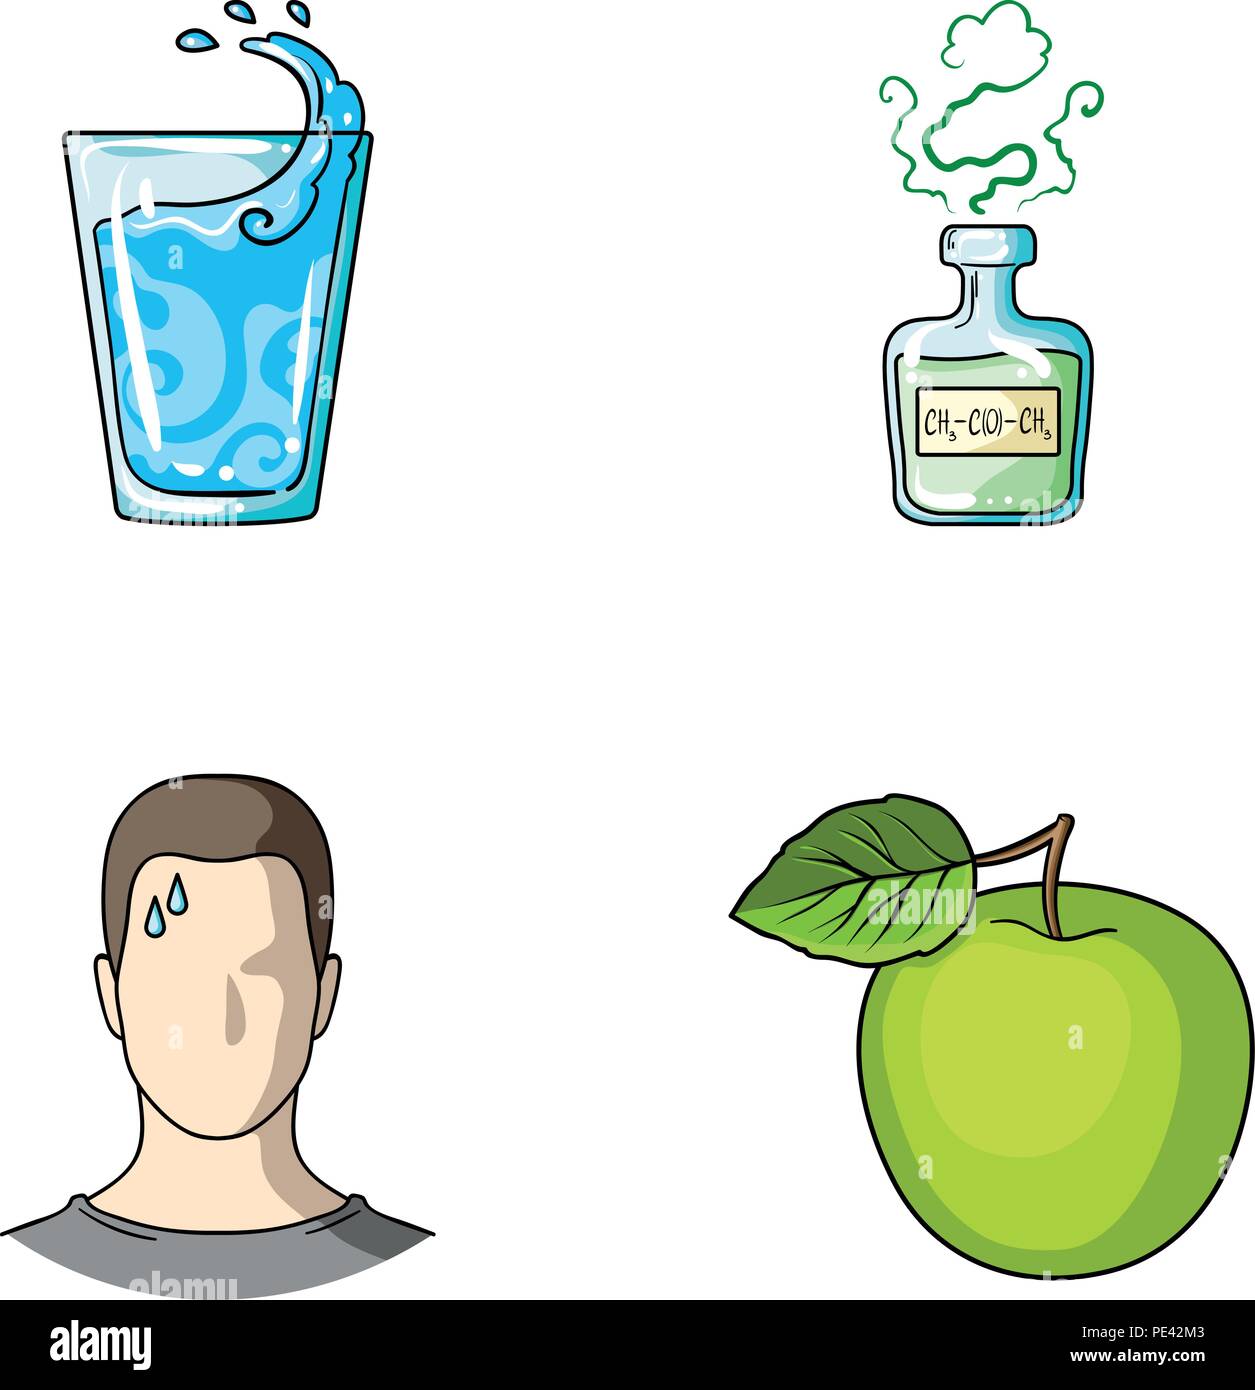 Ein Glas Wasser, eine Flasche Alkohol, ein Schwitzen Mann, ein Apple. Diabeth set Sammlung Icons im Comic-stil Vektor Symbol lieferbar Abbildung. Stock Vektor